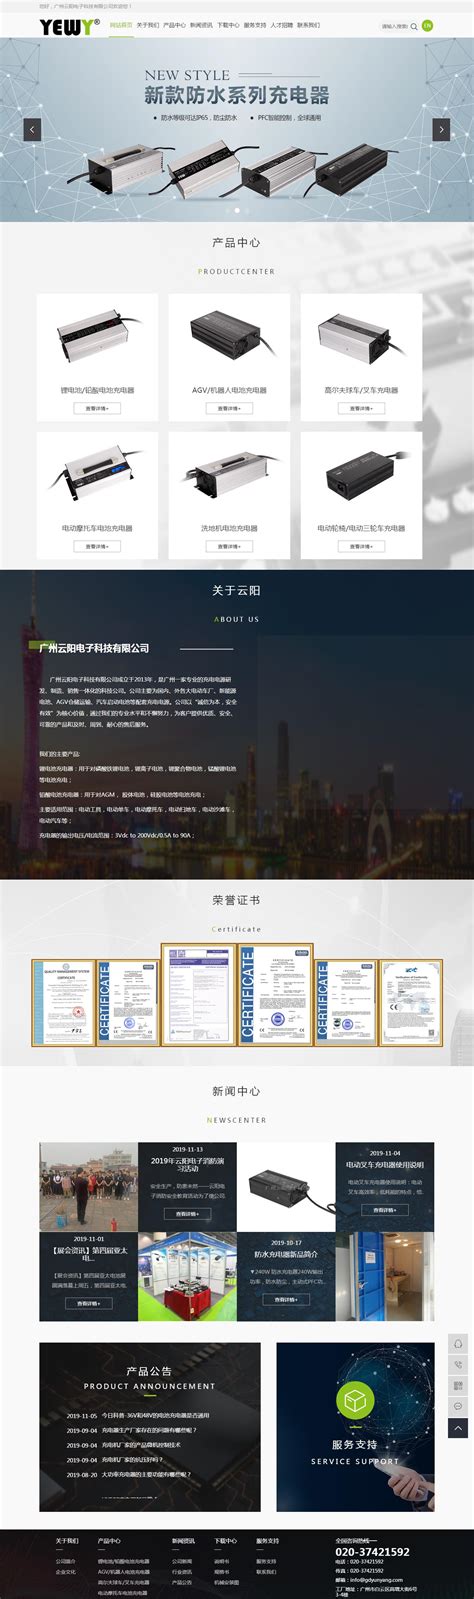 广州营销网站建设 建筑机械业网站推广 优化企业网站平台_多功能包装机械_第一枪